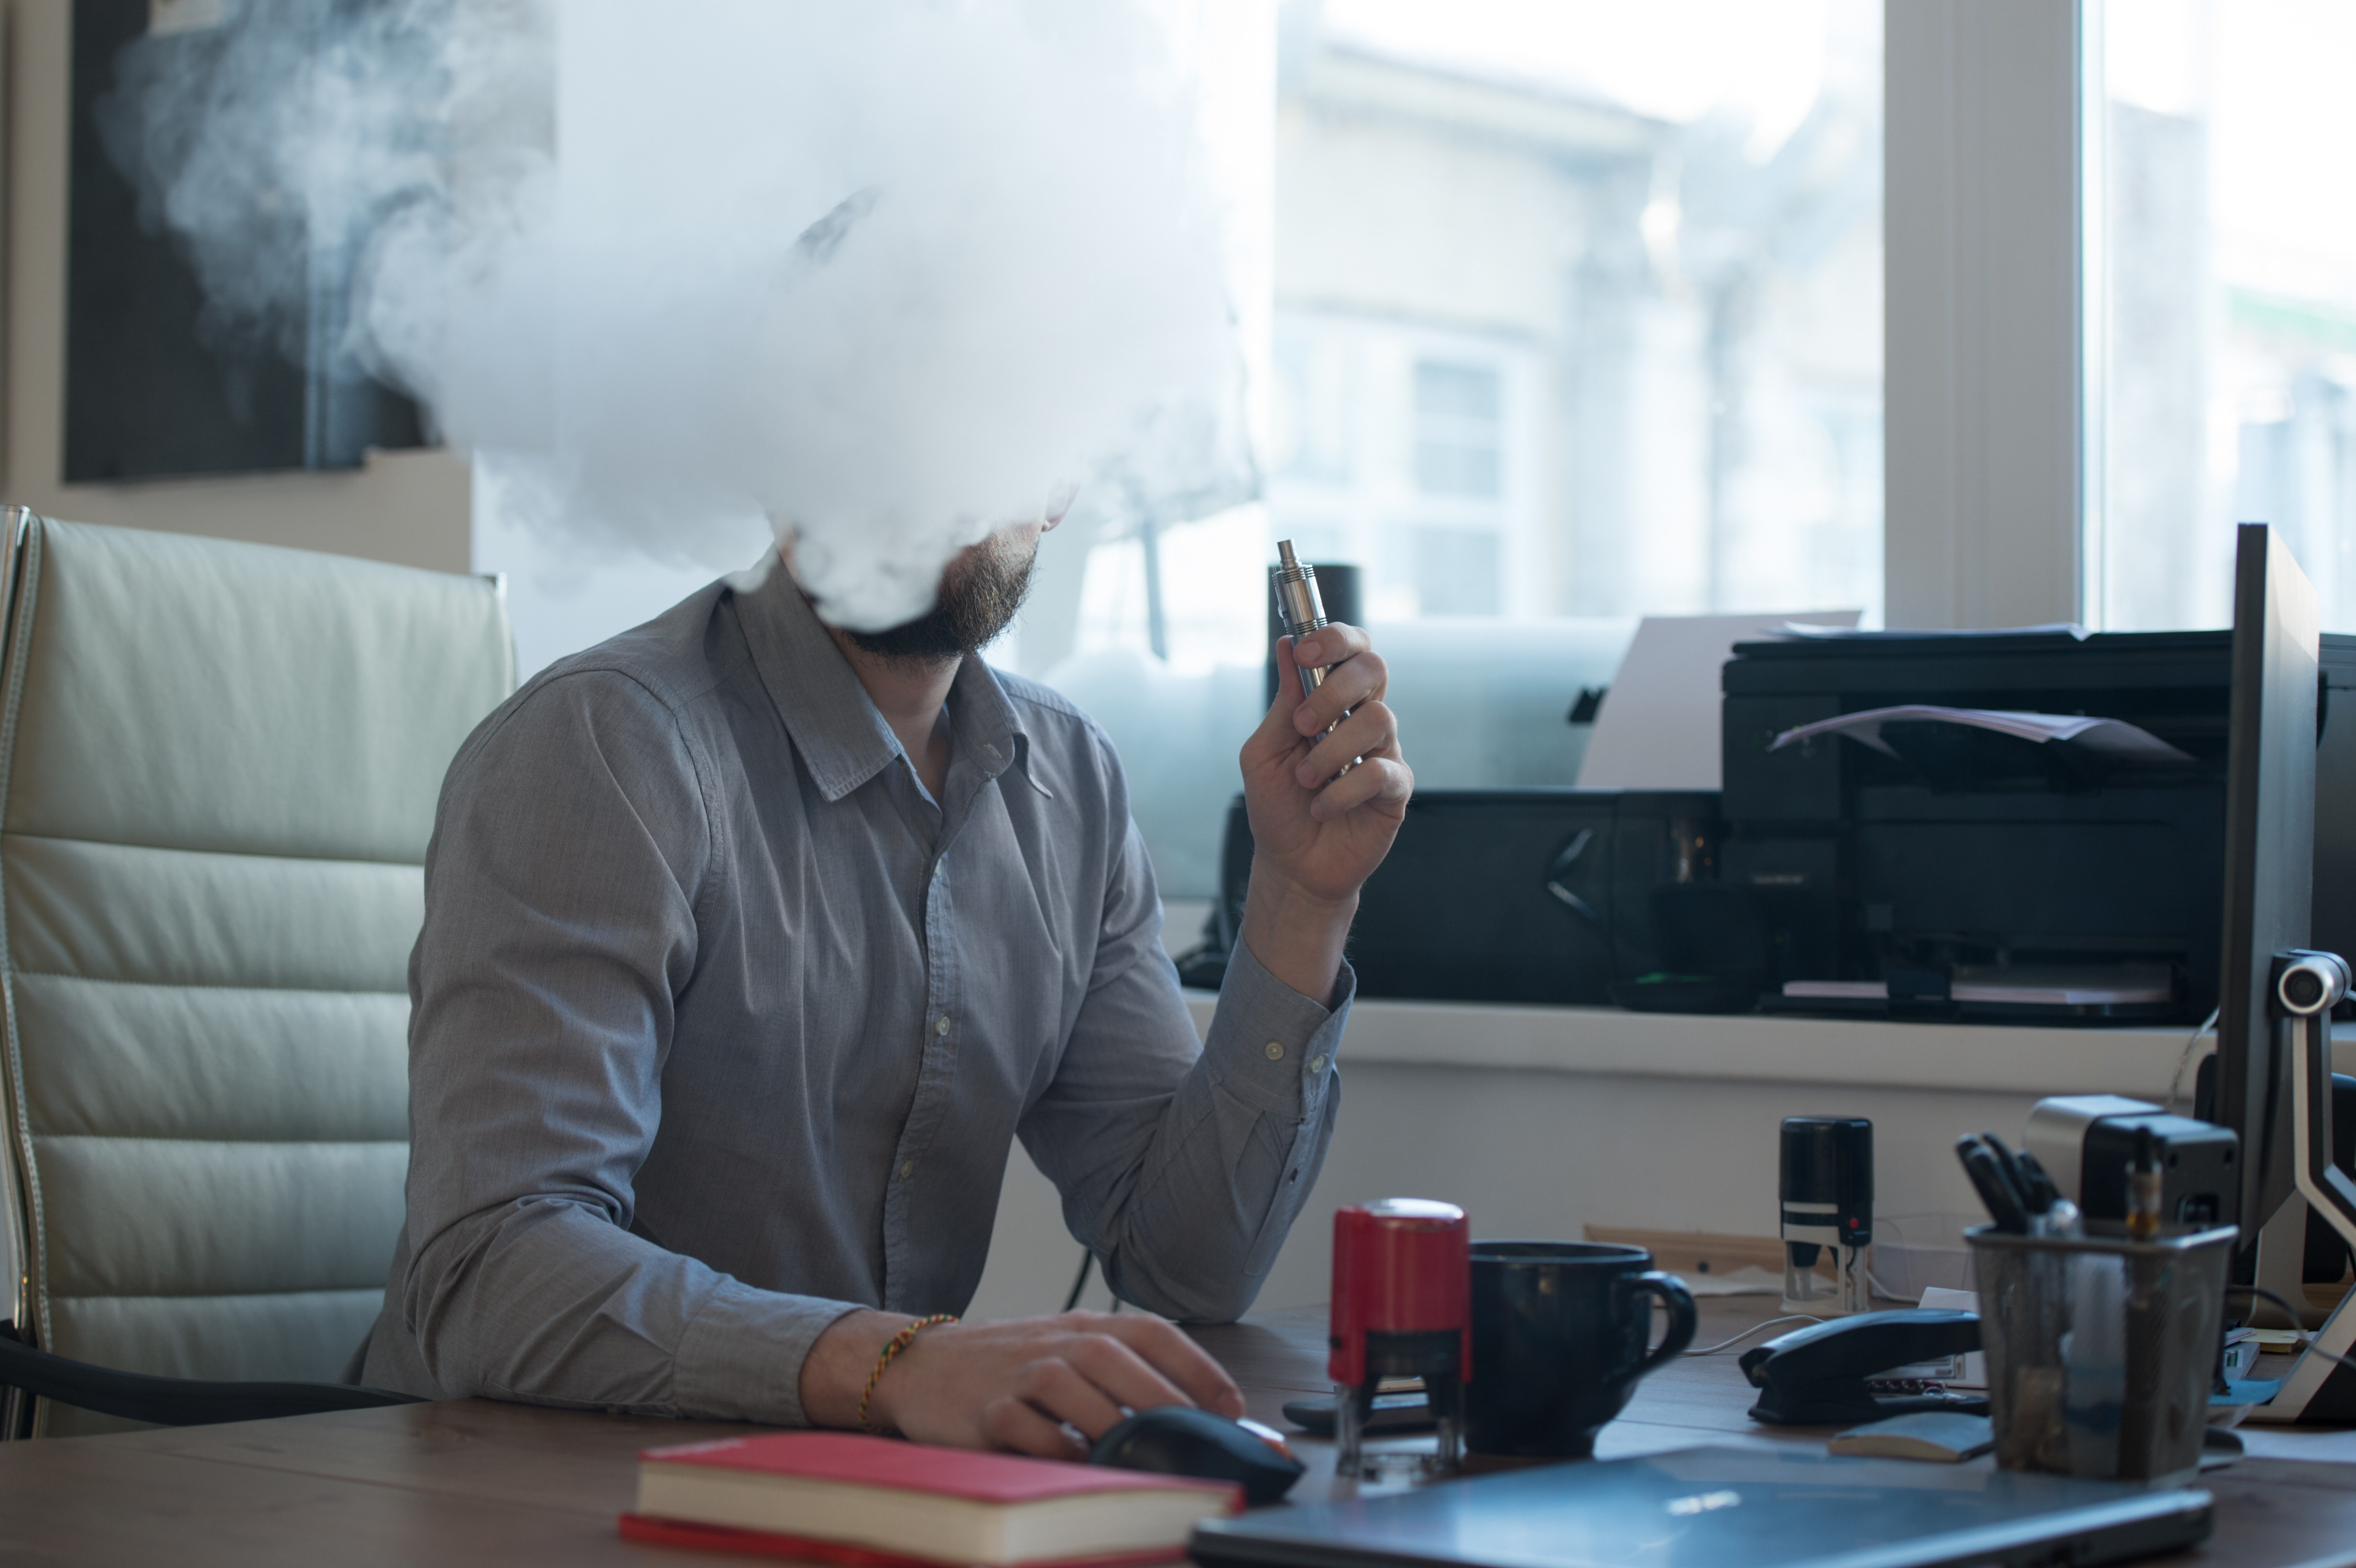 Курение на открытом воздухе. Курение в офисе. Курящий человек в офисе. Человек курит на рабочем месте. Курят у офиса.